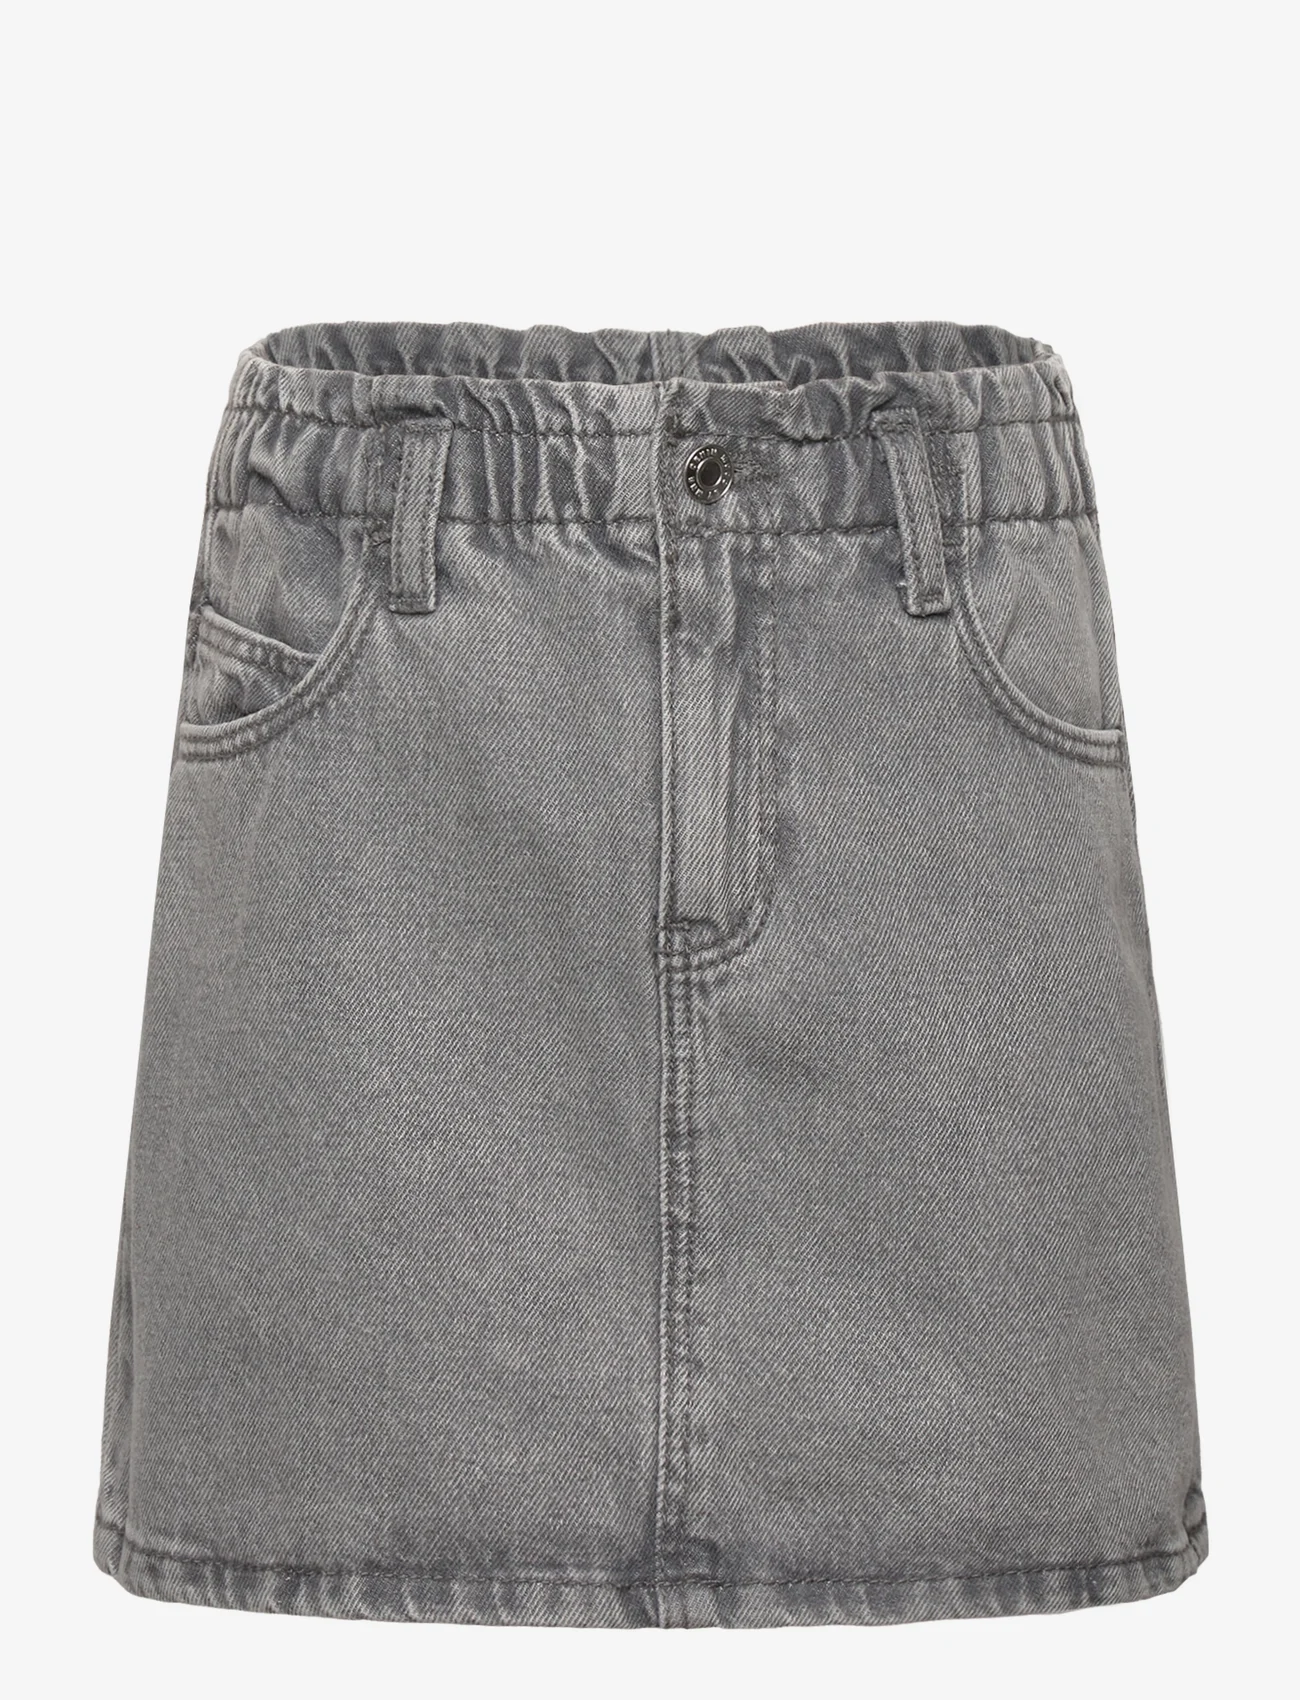 Mango - Paperbag denim skirt - denimskjørt - open grey - 0